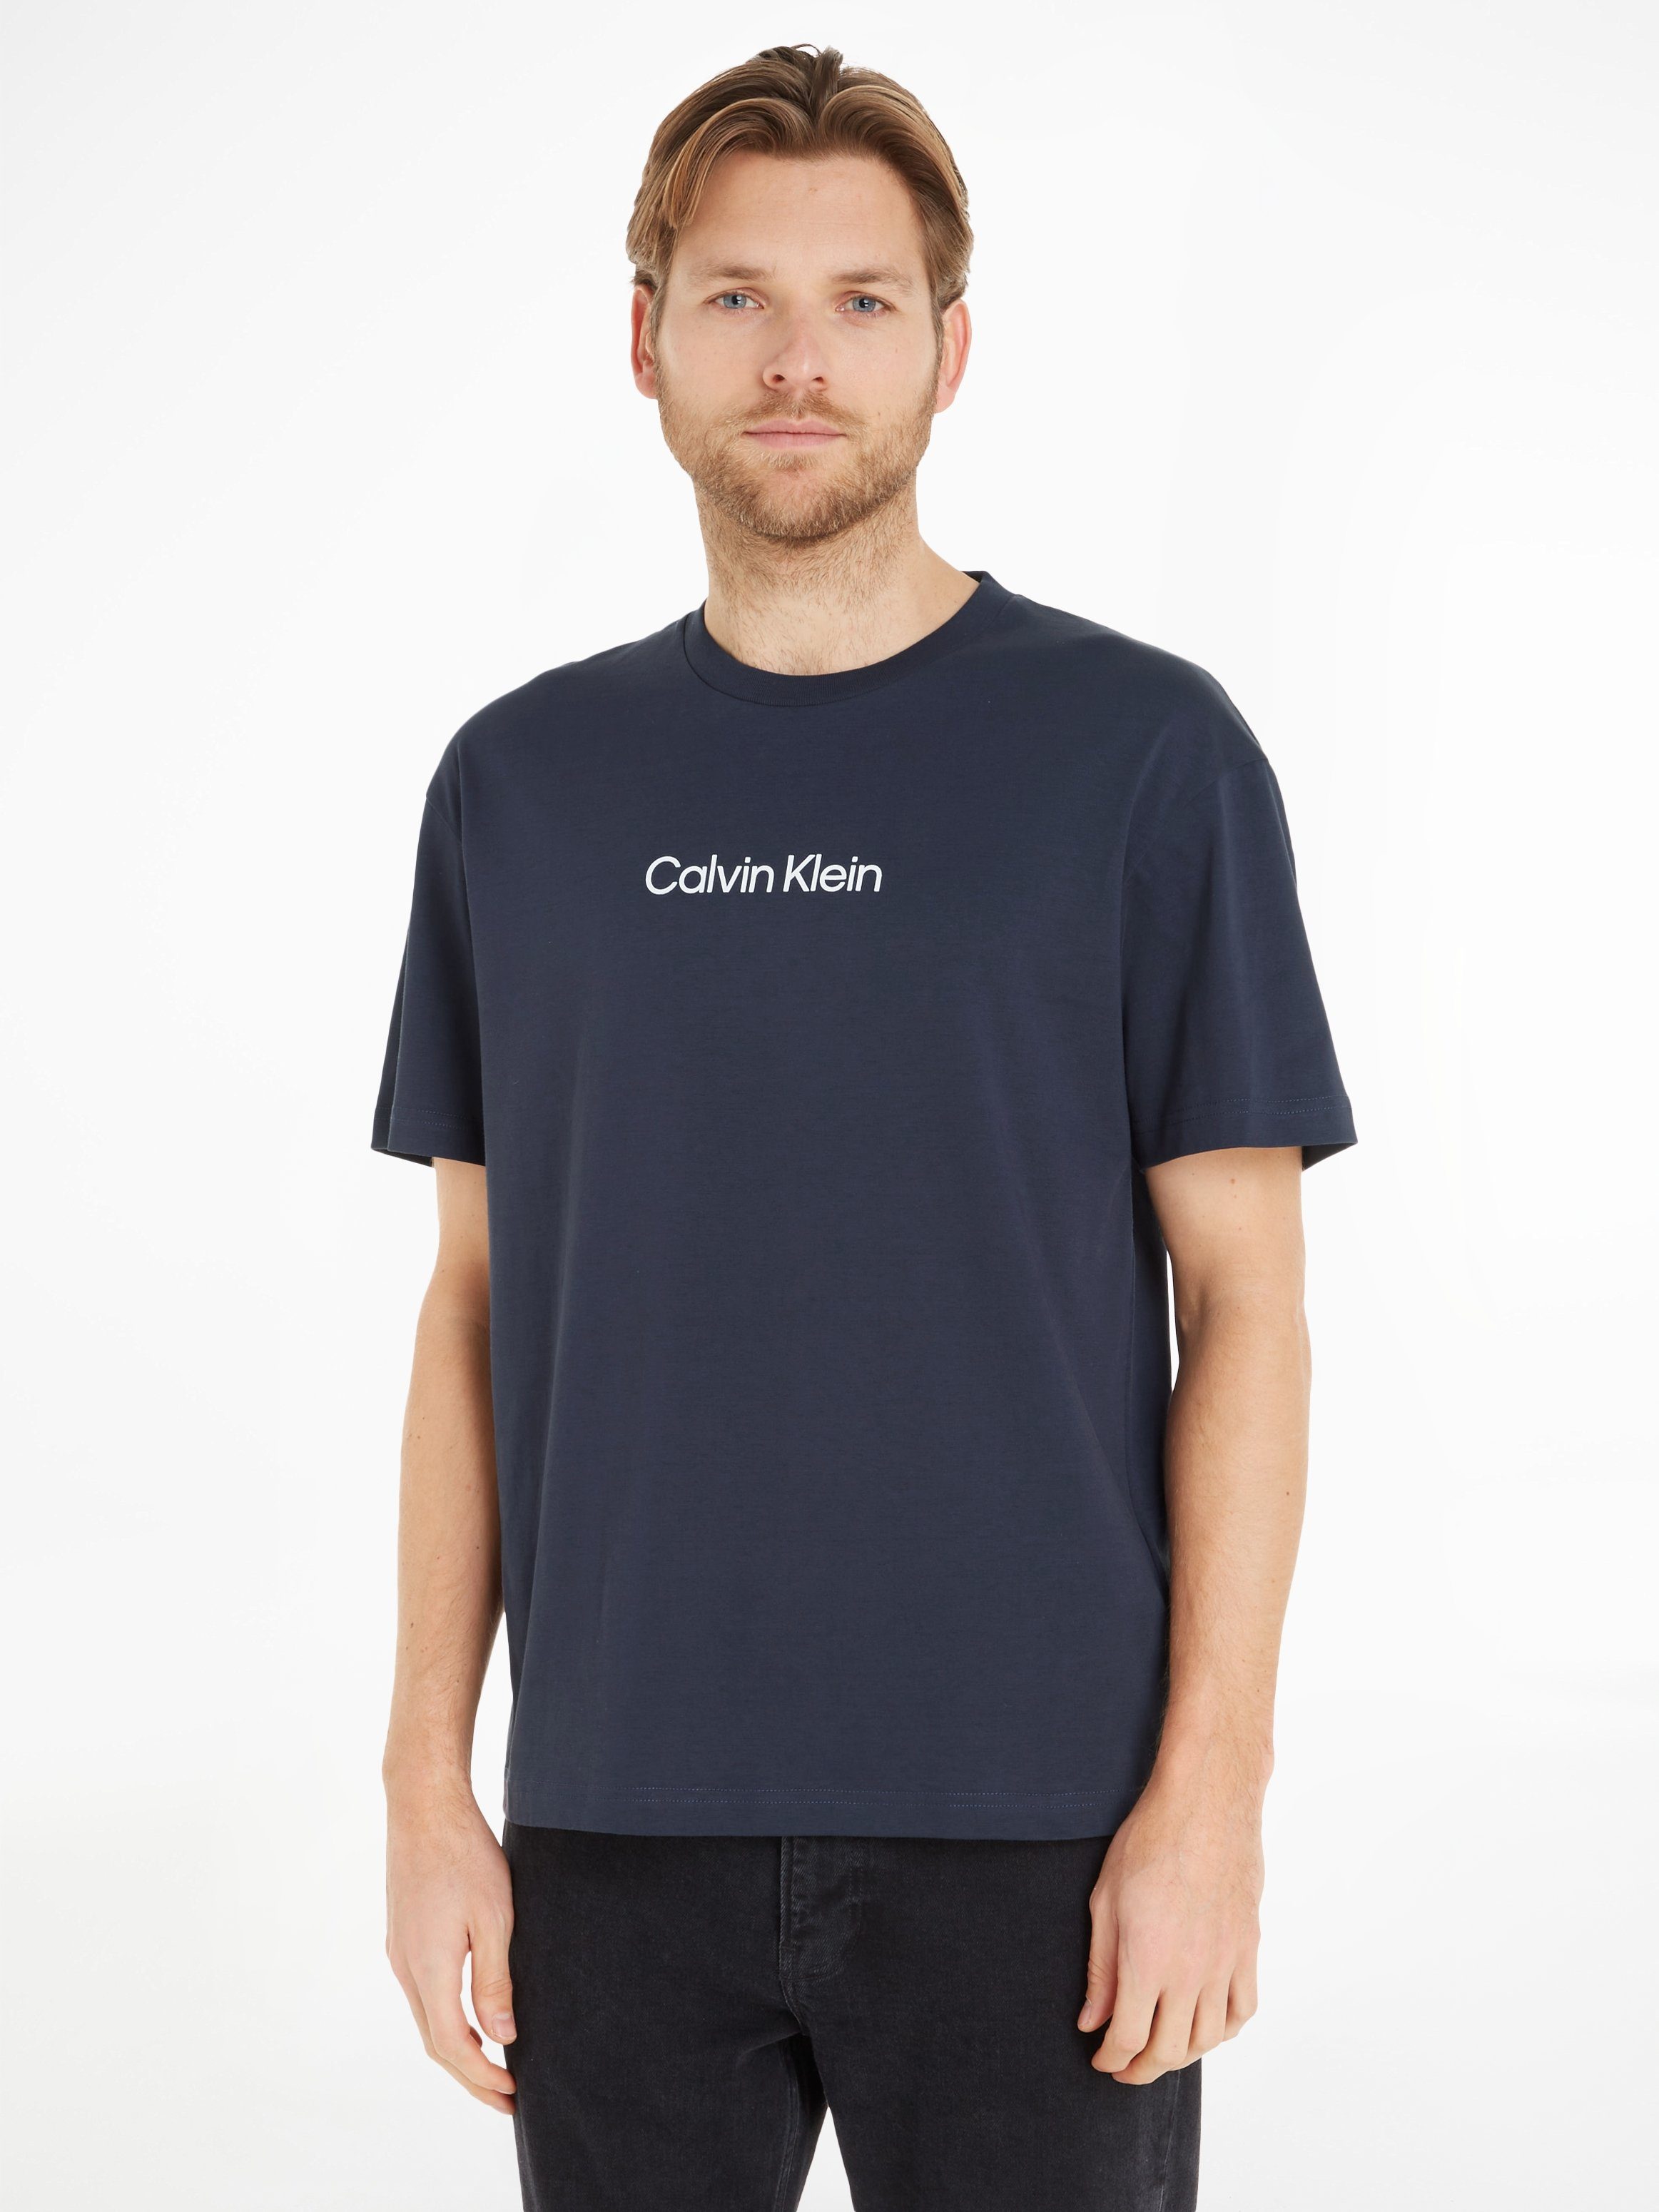 Calvin Klein T-Shirt HERO LOGO COMFORT T-SHIRT mit aufgedrucktem Markenlabel Night Sky